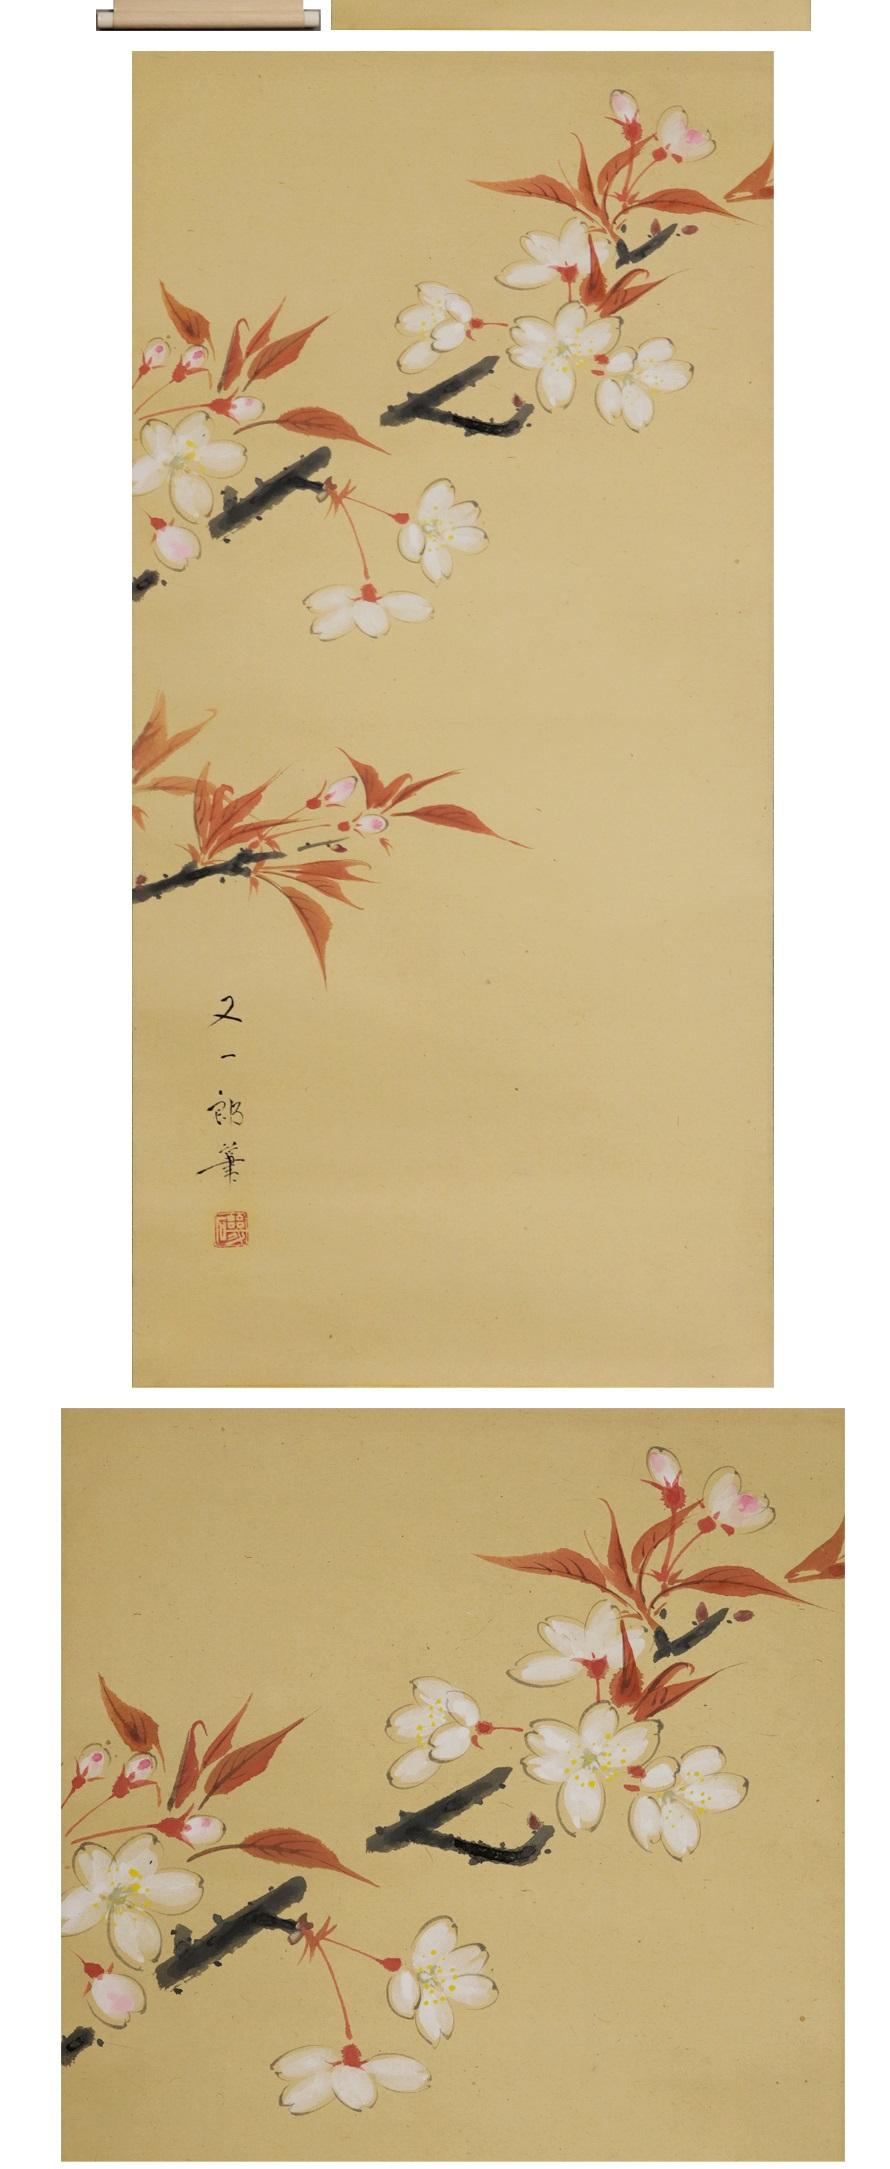 Japanese Cherry Blossoms Showa Period Scroll Japan 20c Artist Mataichiro Isoda Nihonga St For Sale